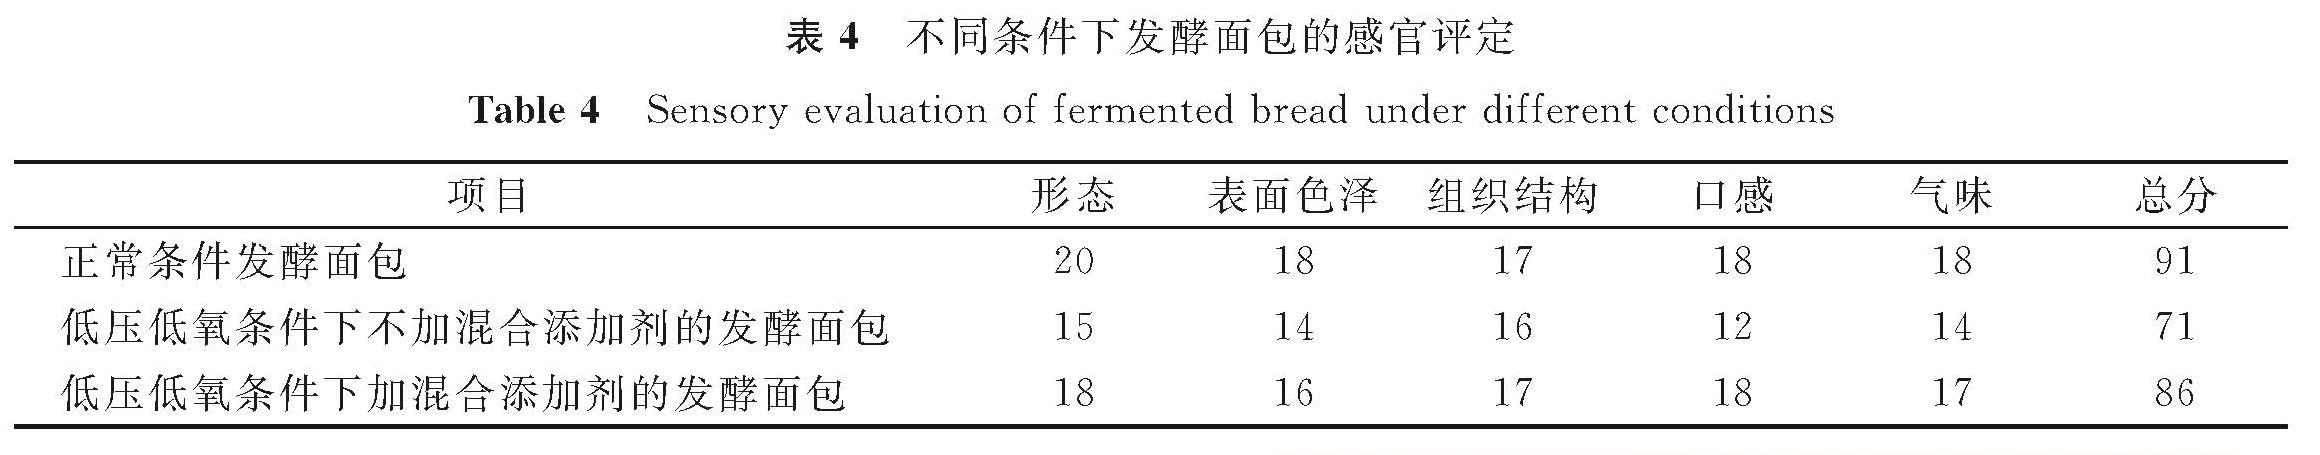 表4 不同条件下发酵面包的感官评定<br/>Table 4 Sensory evaluation of fermented bread under different conditions